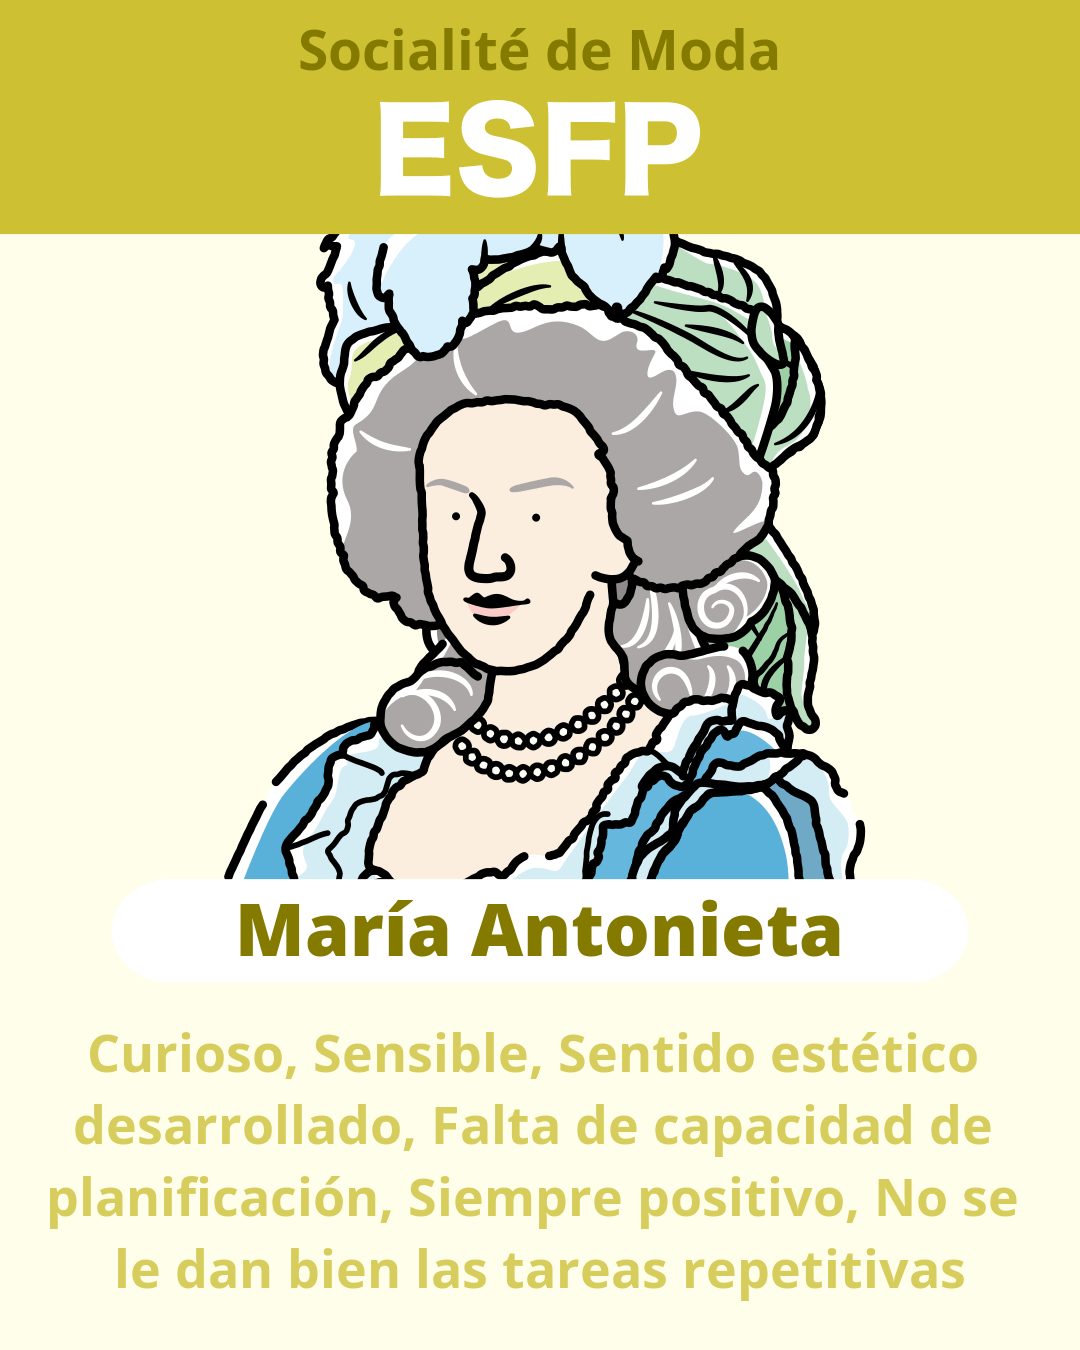 María Antonieta - ESFP